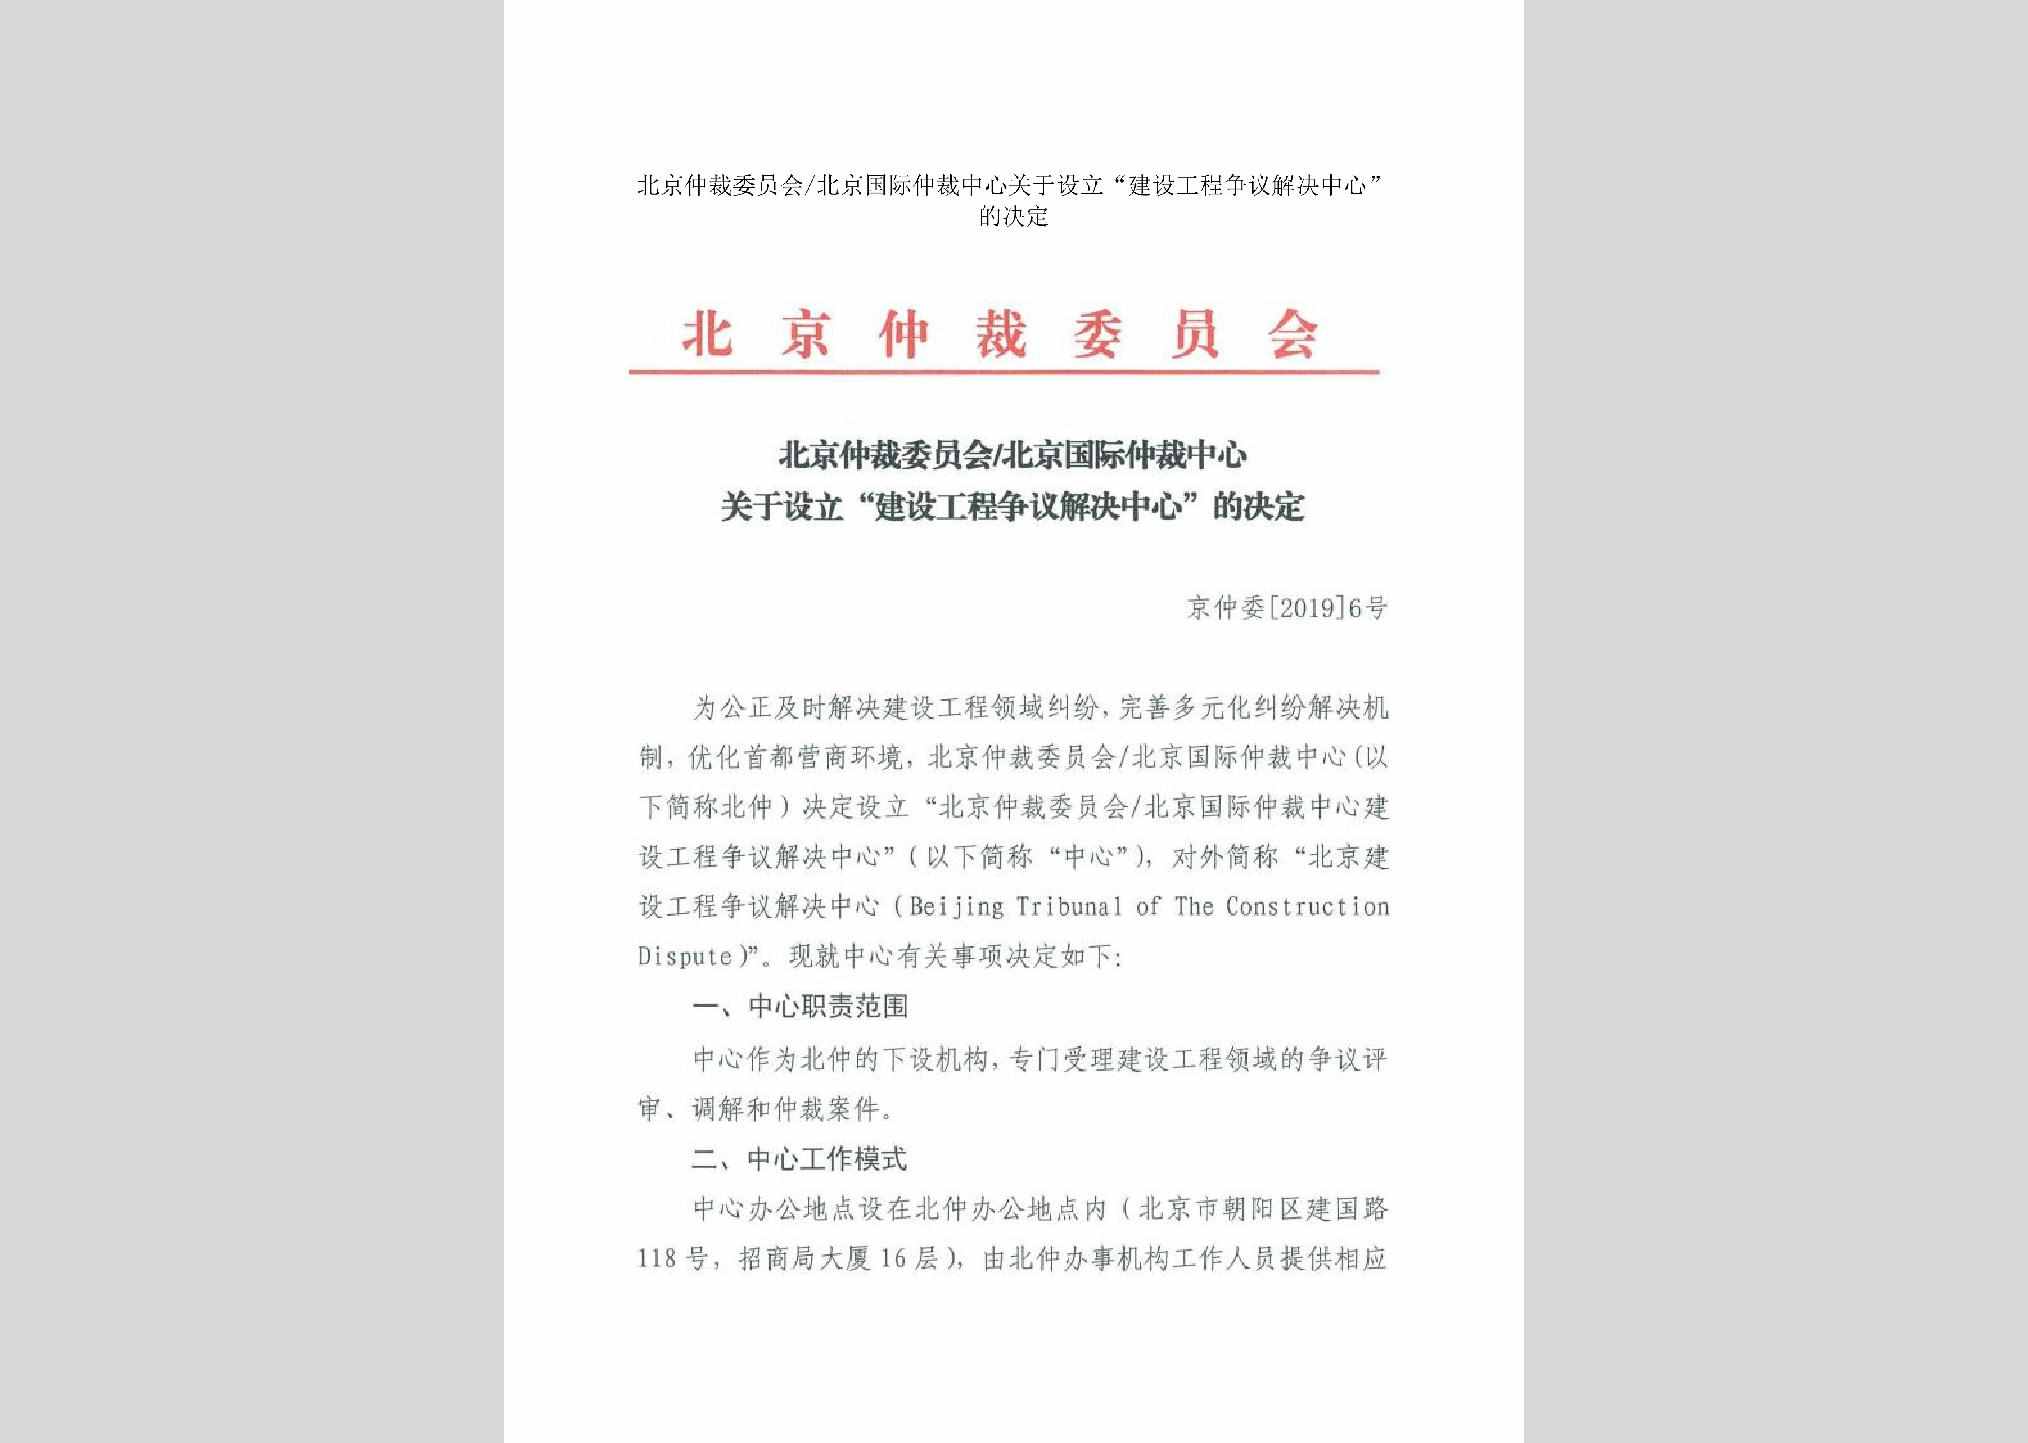 京仲委[2019]6号：北京仲裁委员会/北京国际仲裁中心关于设立“建设工程争议解决中心”的决定